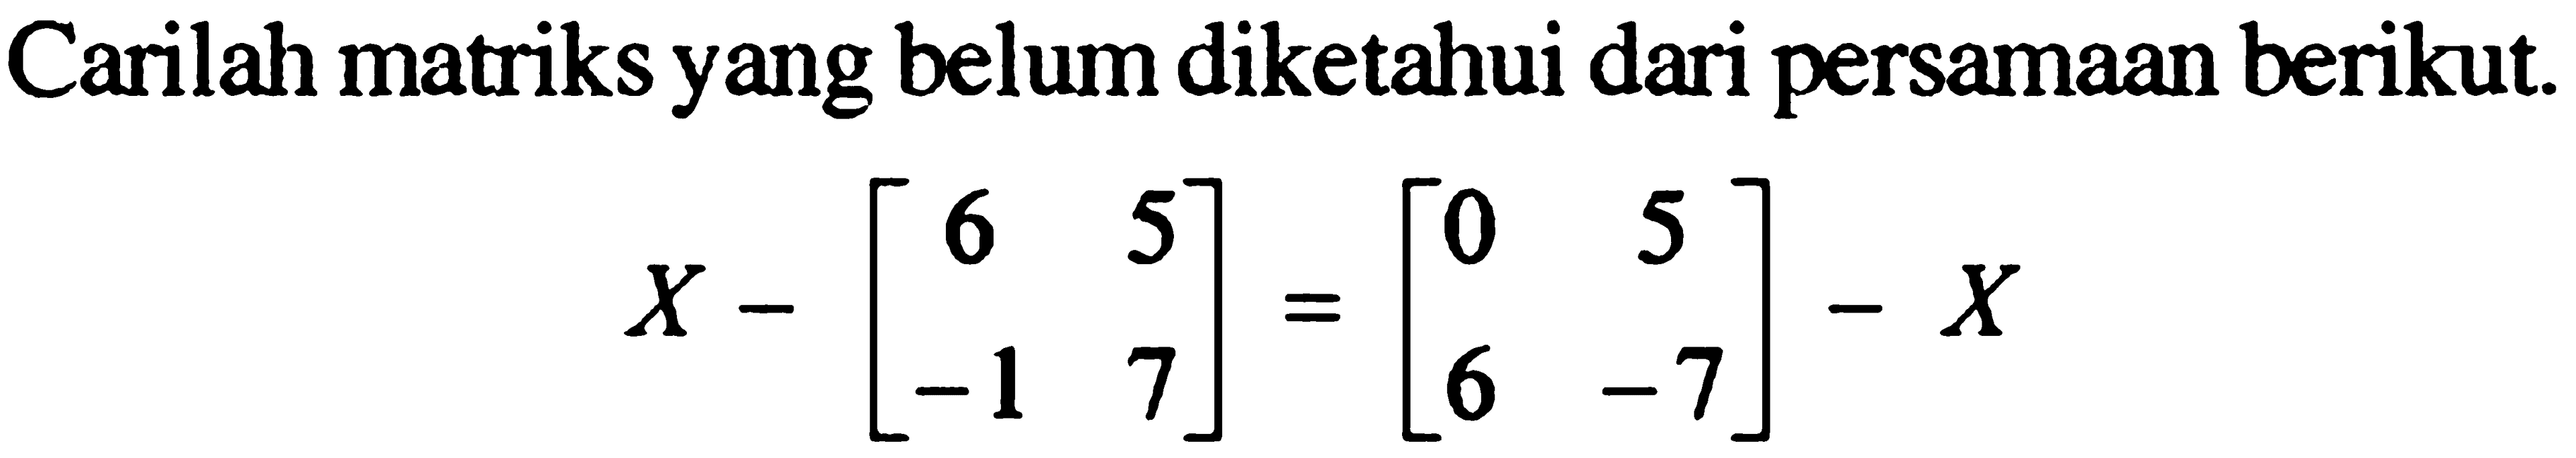 Carilah matriks yang belum diketahui dari persamaan berikut. X-[6 5 -1 7]=[0 5 6 -7]-X